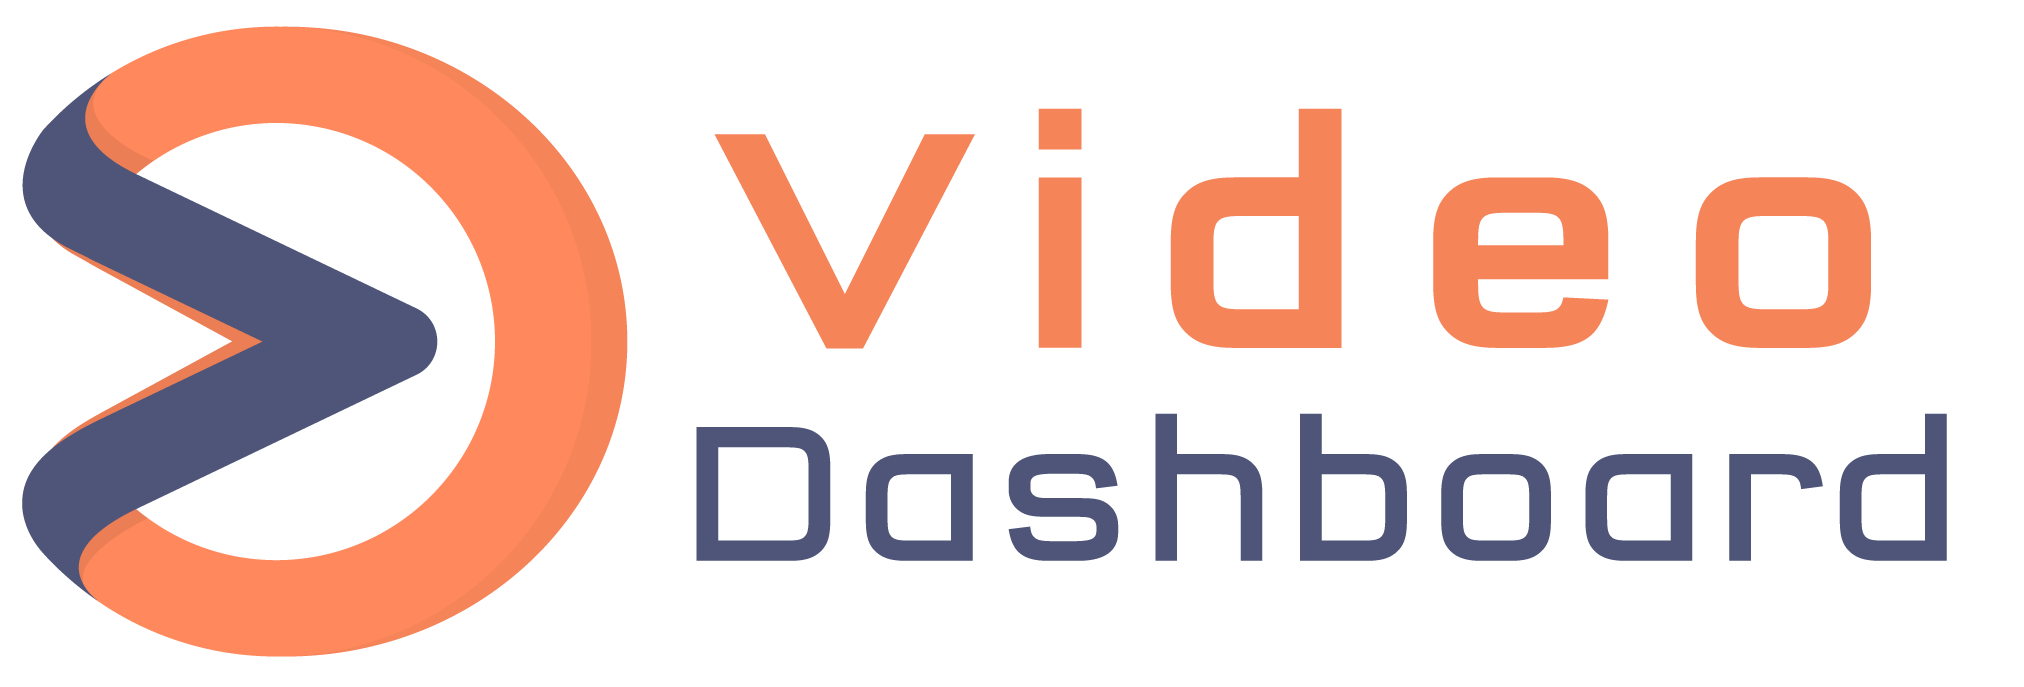 VideoDashboard